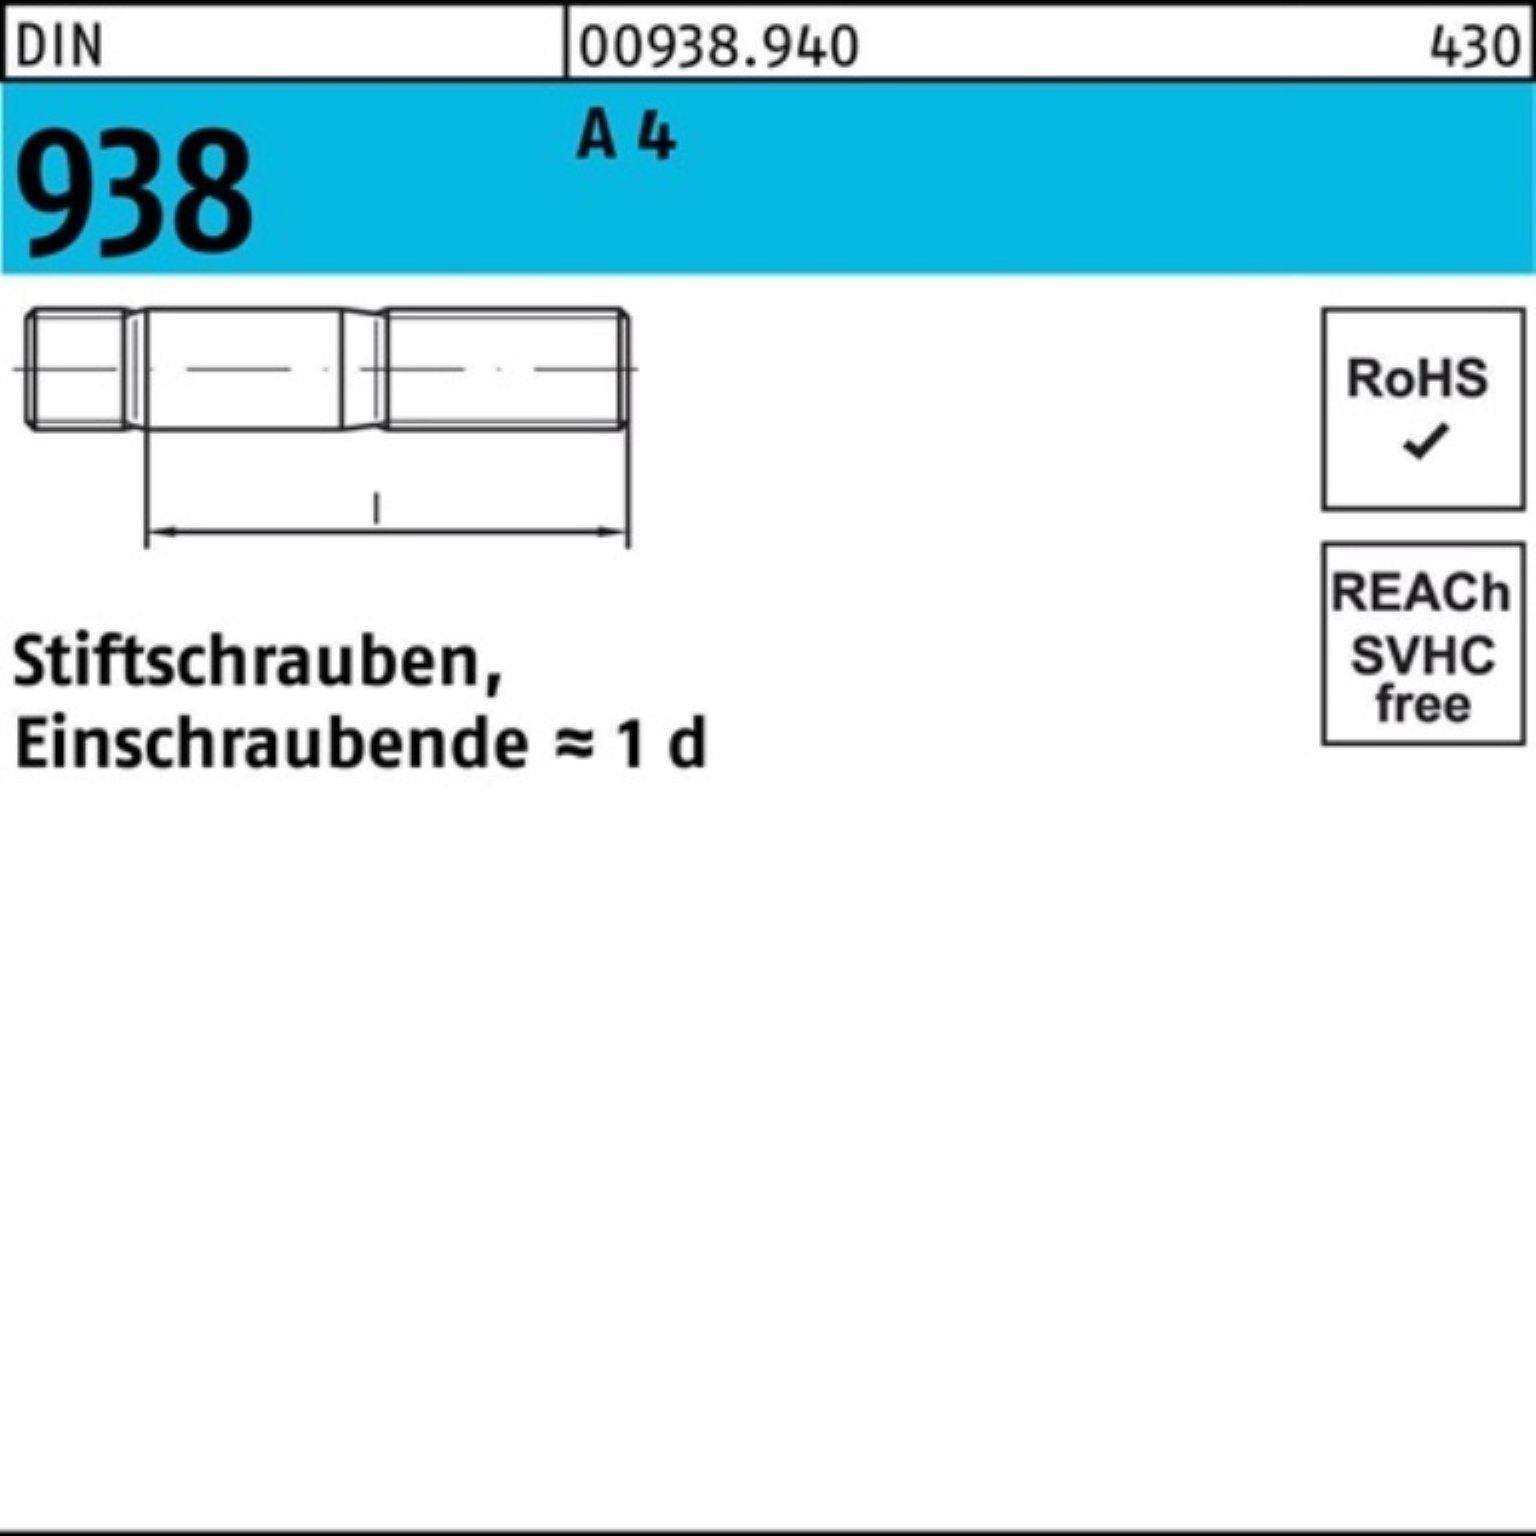 4 DIN 4 100er 1 A Stück Pack Reyher Stiftschraube 938 Stif 938 Stiftschraube A M24x DIN 90